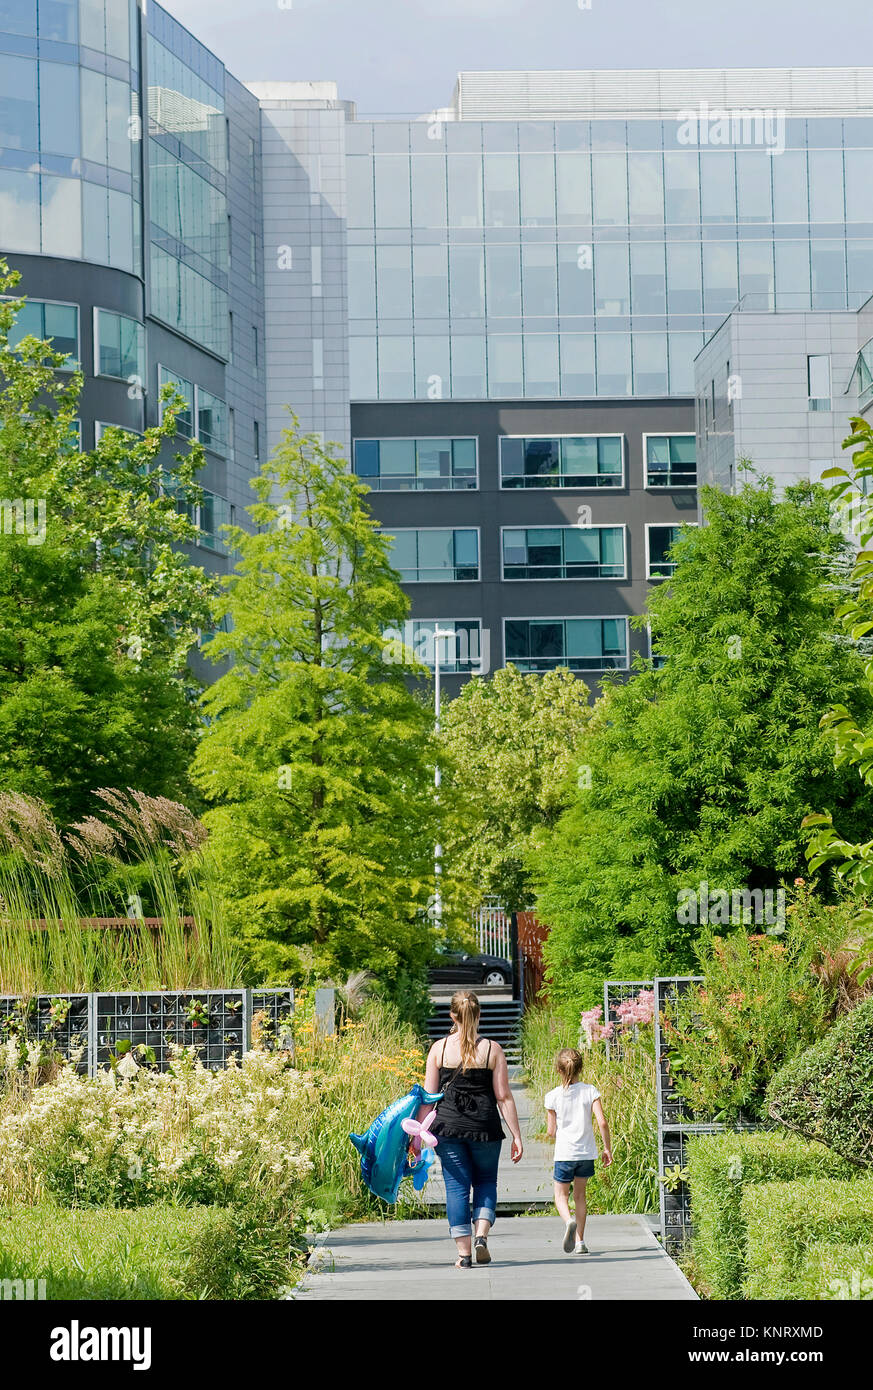 Lille (Nordfrankreich): der Garten des Riesen ('Jardin des geants') im Geschäftsviertel. Garten, Grün und Bürogebäude Fassade Stockfoto